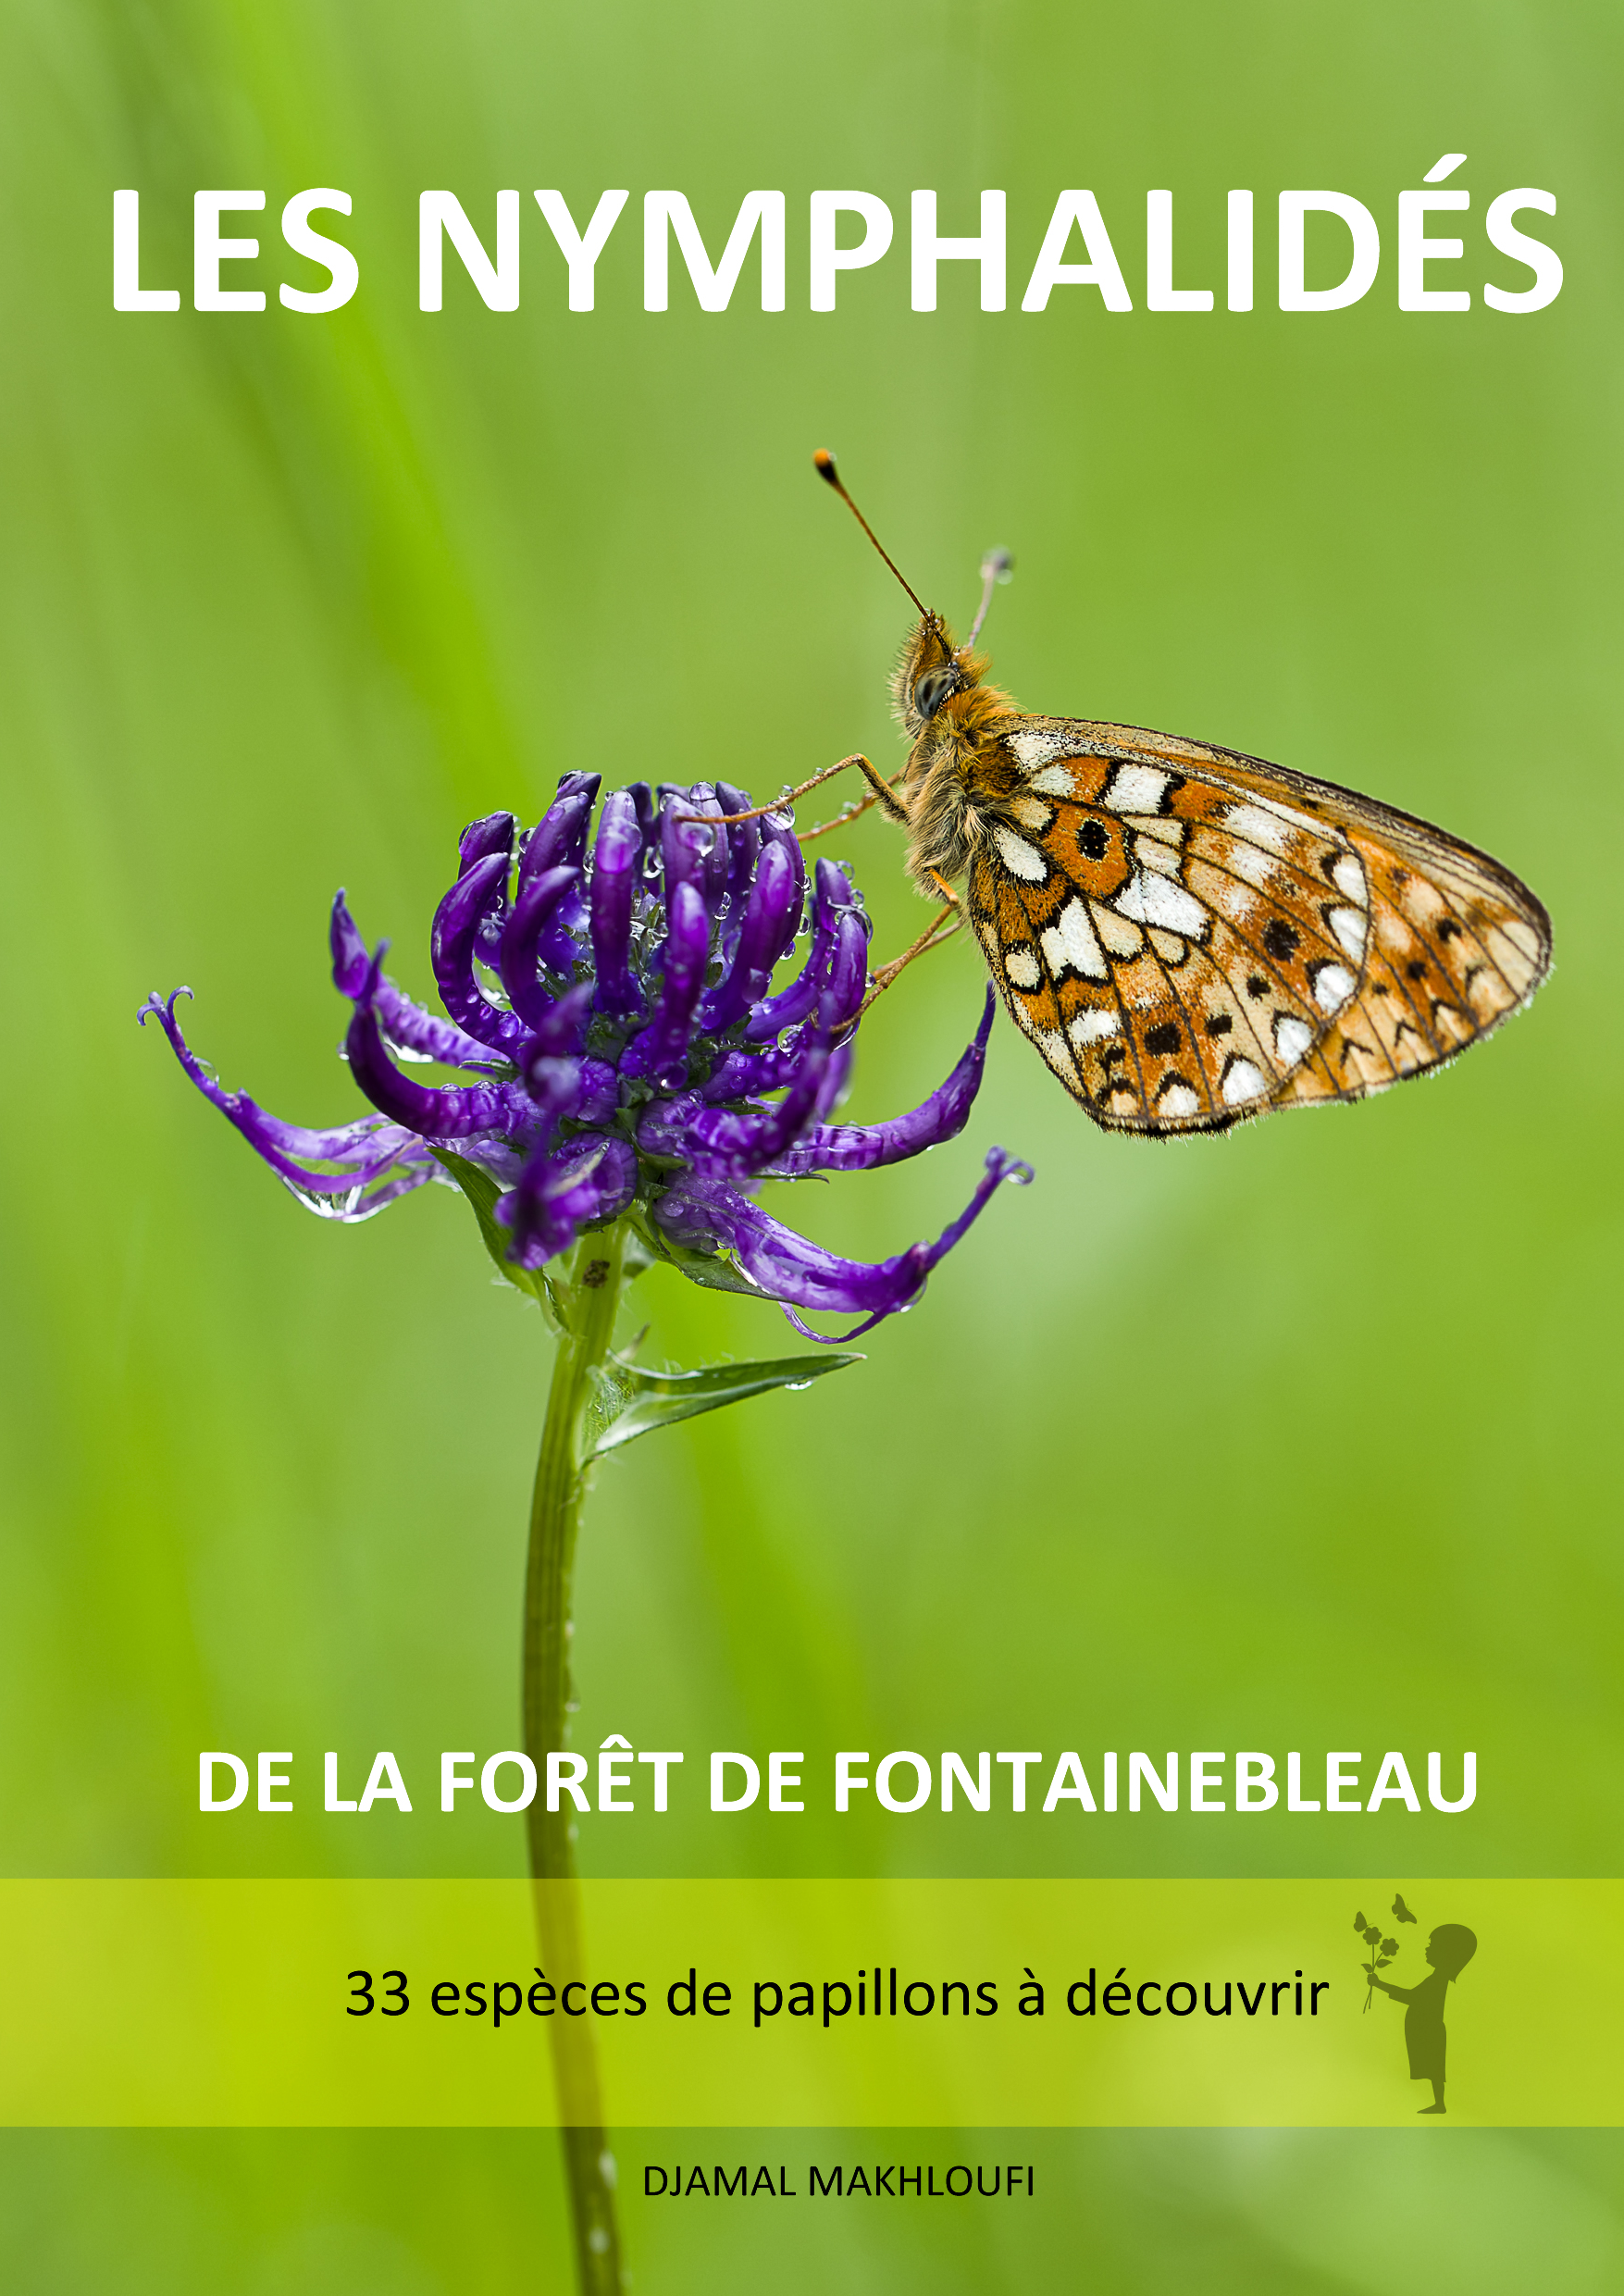 Les Nymphalidés de Fontainebleau